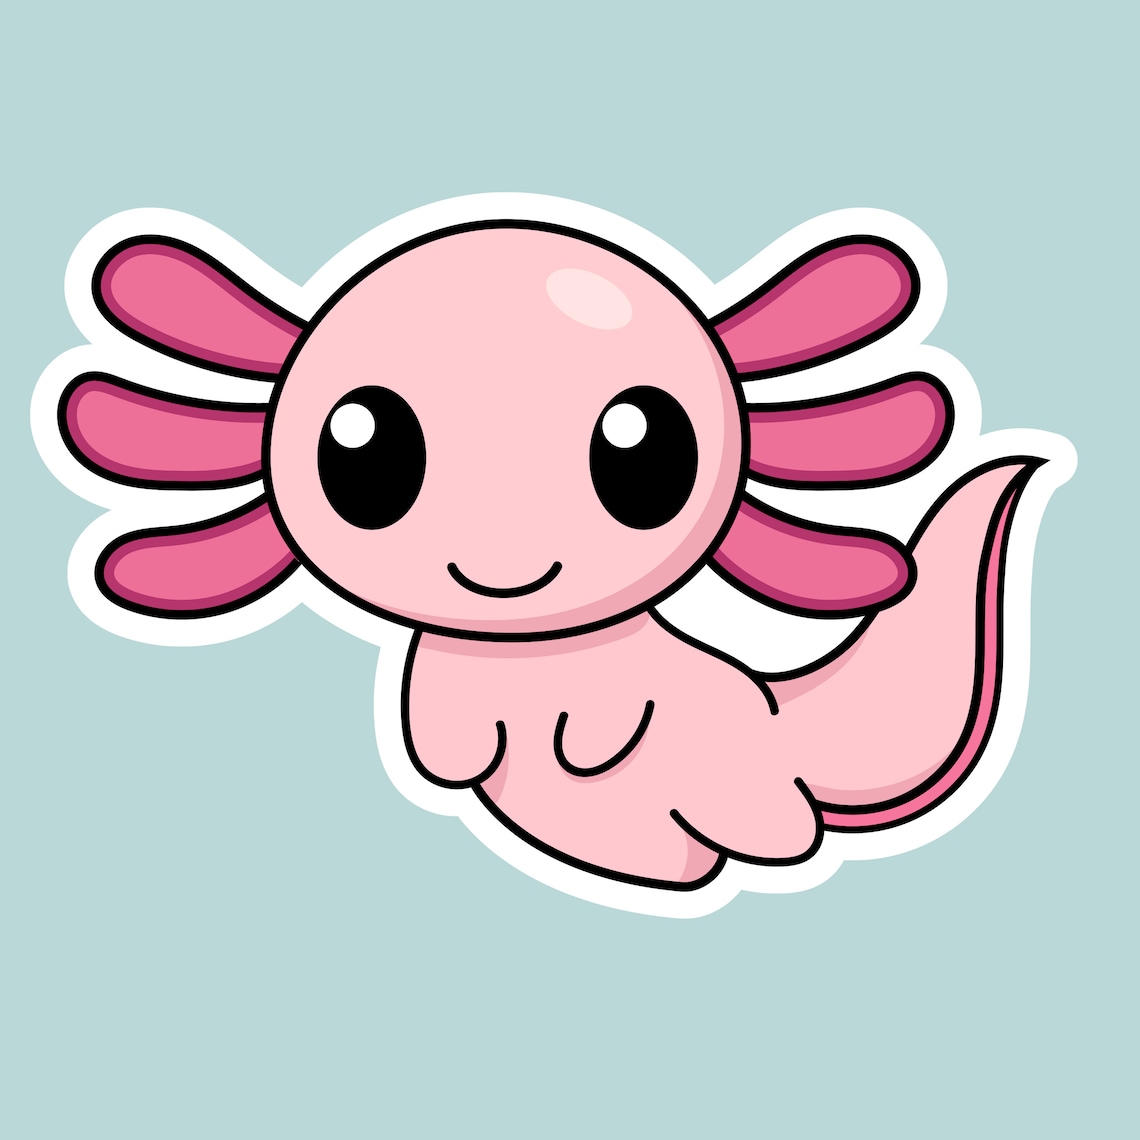 Cute Kawaii Axolotl Sticker Sheet Axolotl Sticker Sheet | Etsy